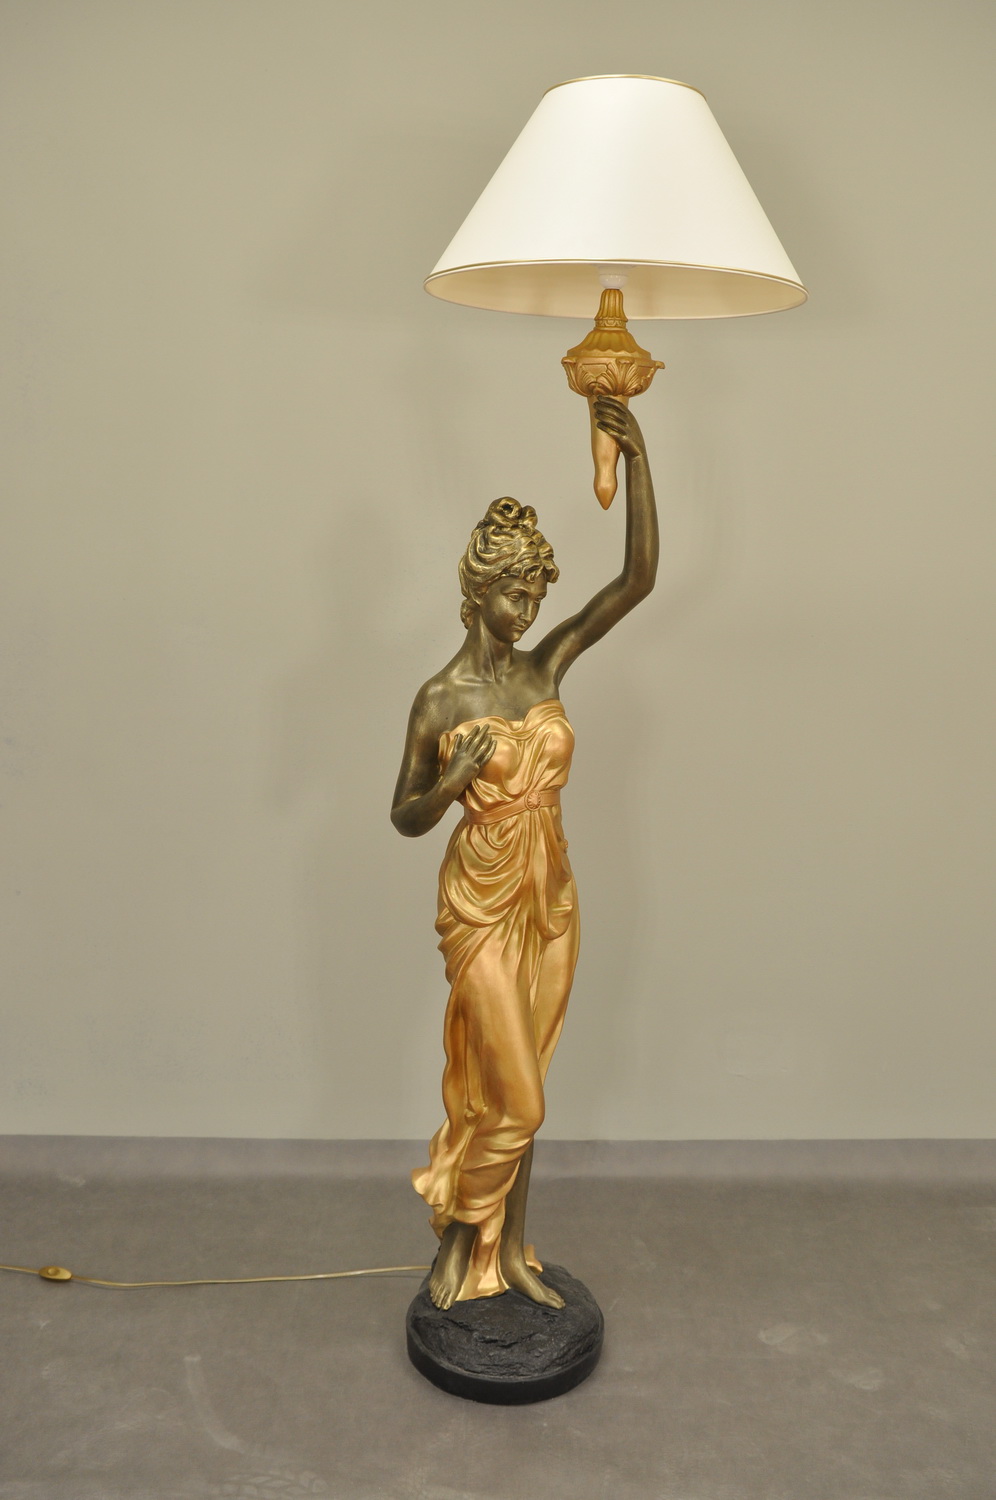 Lampa vysoká / Antický styl / 183cm - col.110 Zakázková výroba